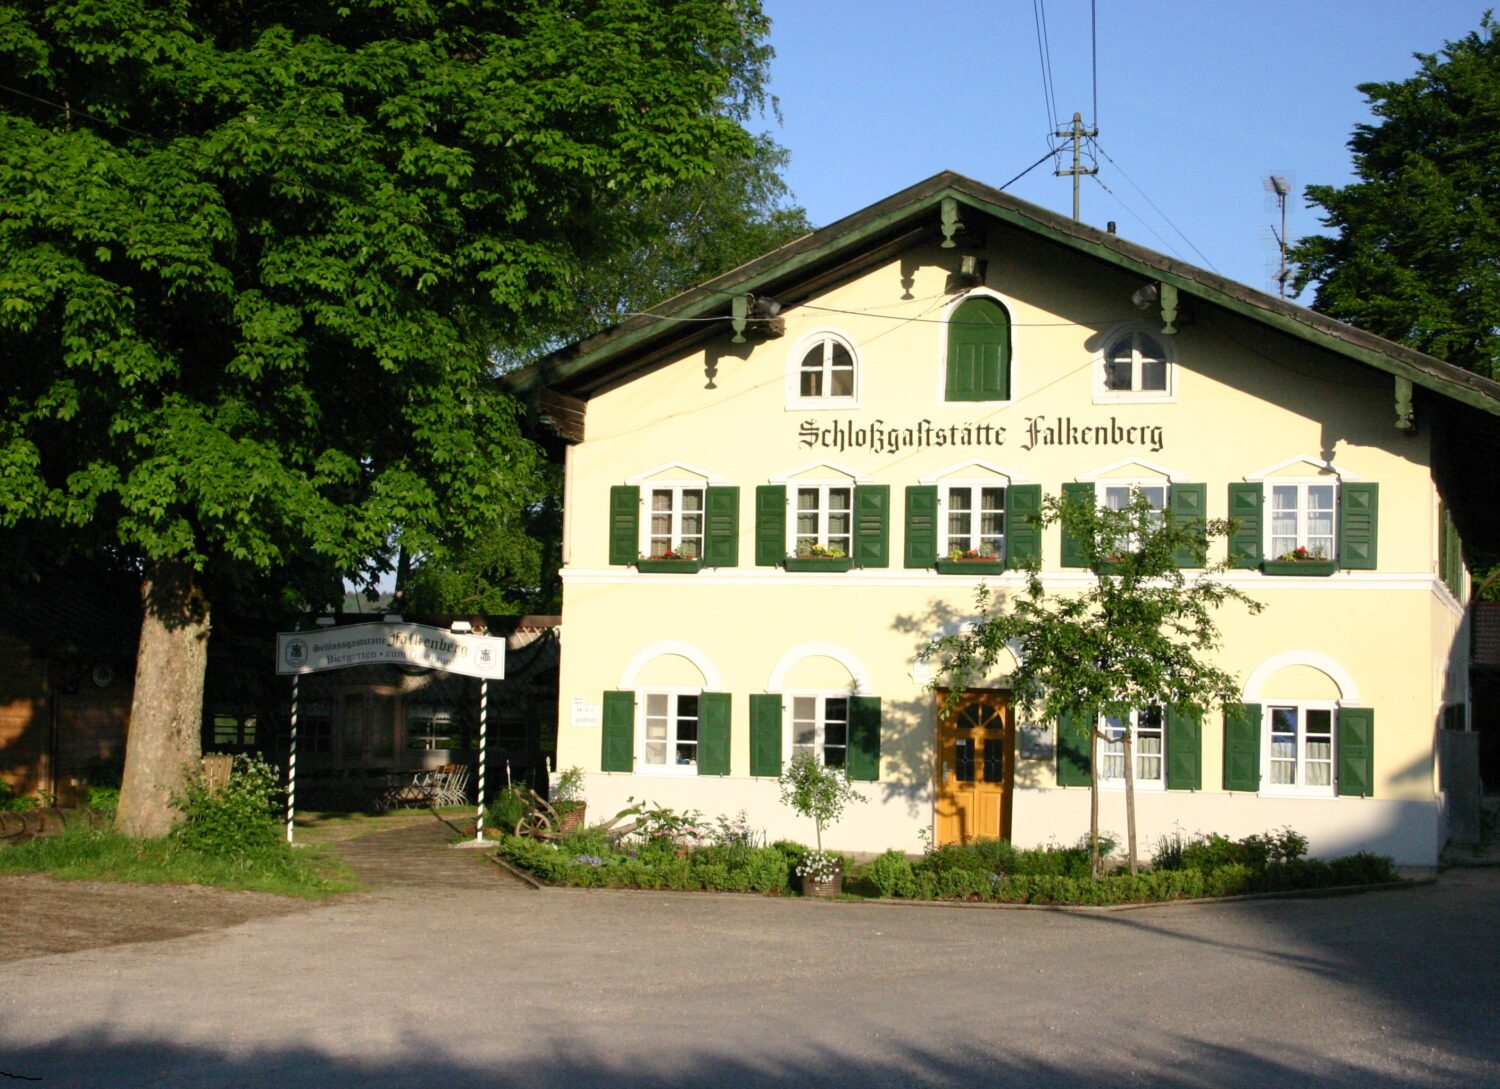 Aus dem 18. Jahrhundert stammt das Gebäude der Schlossgaststätte Falkenberg.